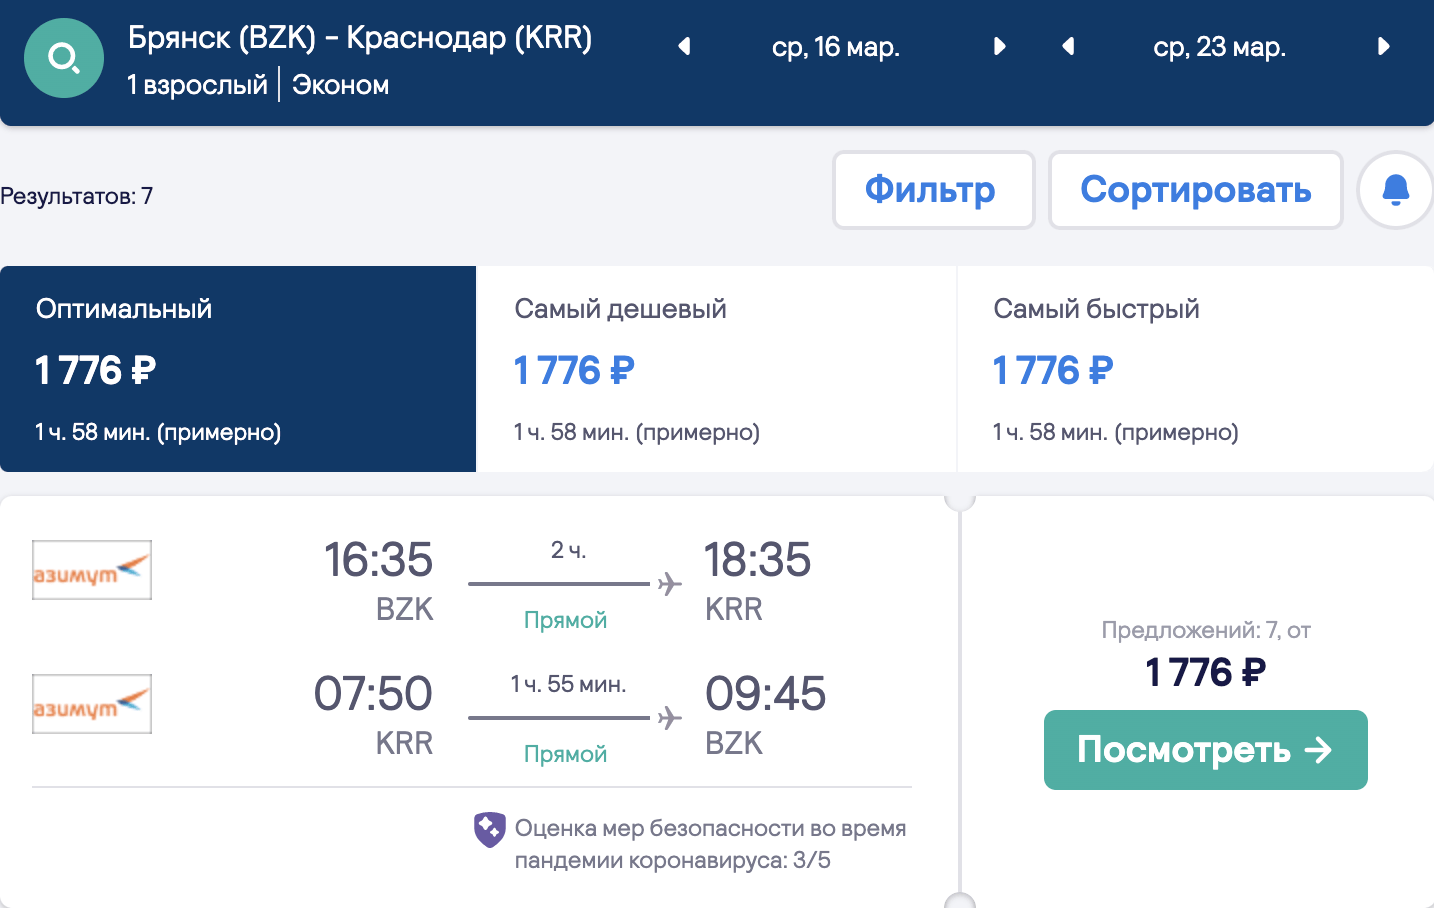 Liela lētu lidojumu izvēle no reģioniem uz Krasnodaru un Minvody no 1800₽ turp un atpakaļ